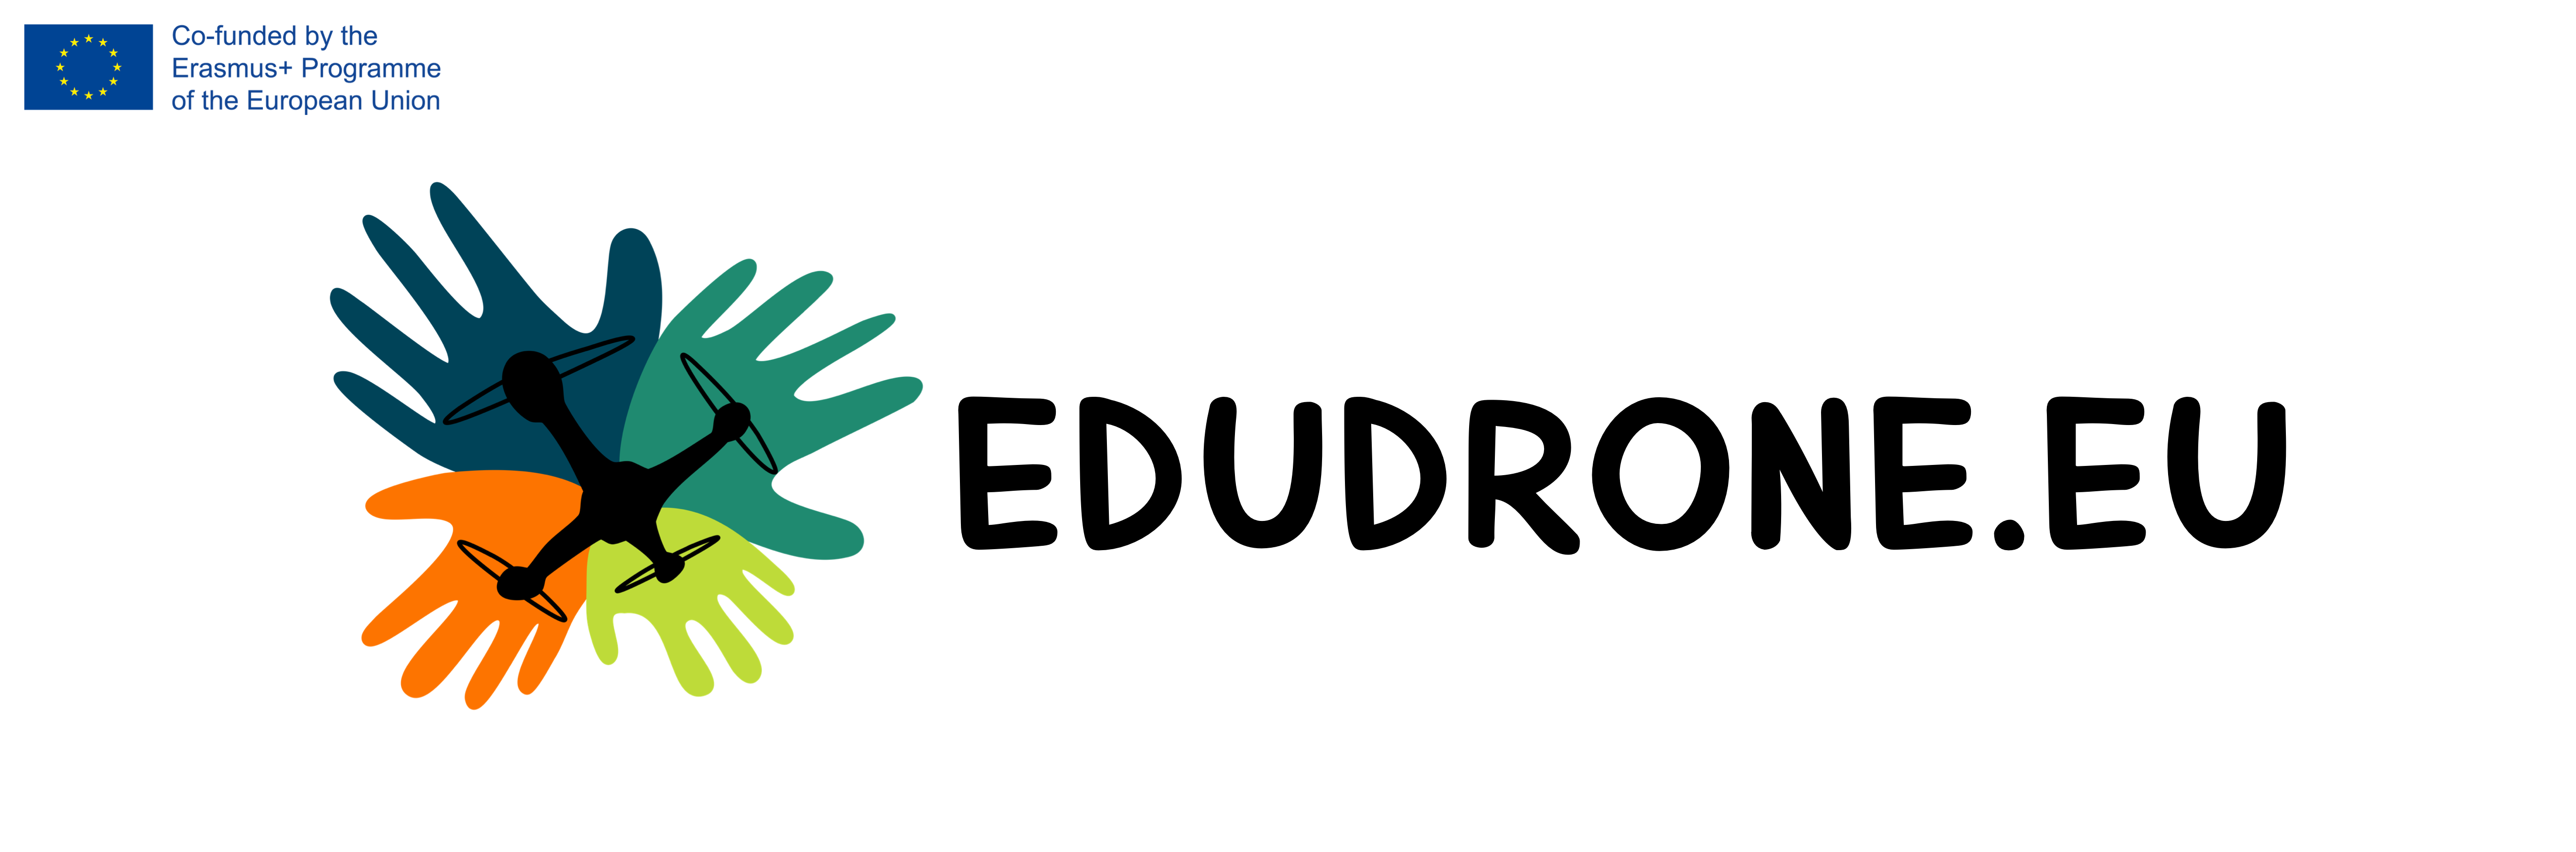 Logo EDUDRONE.EU.PNG